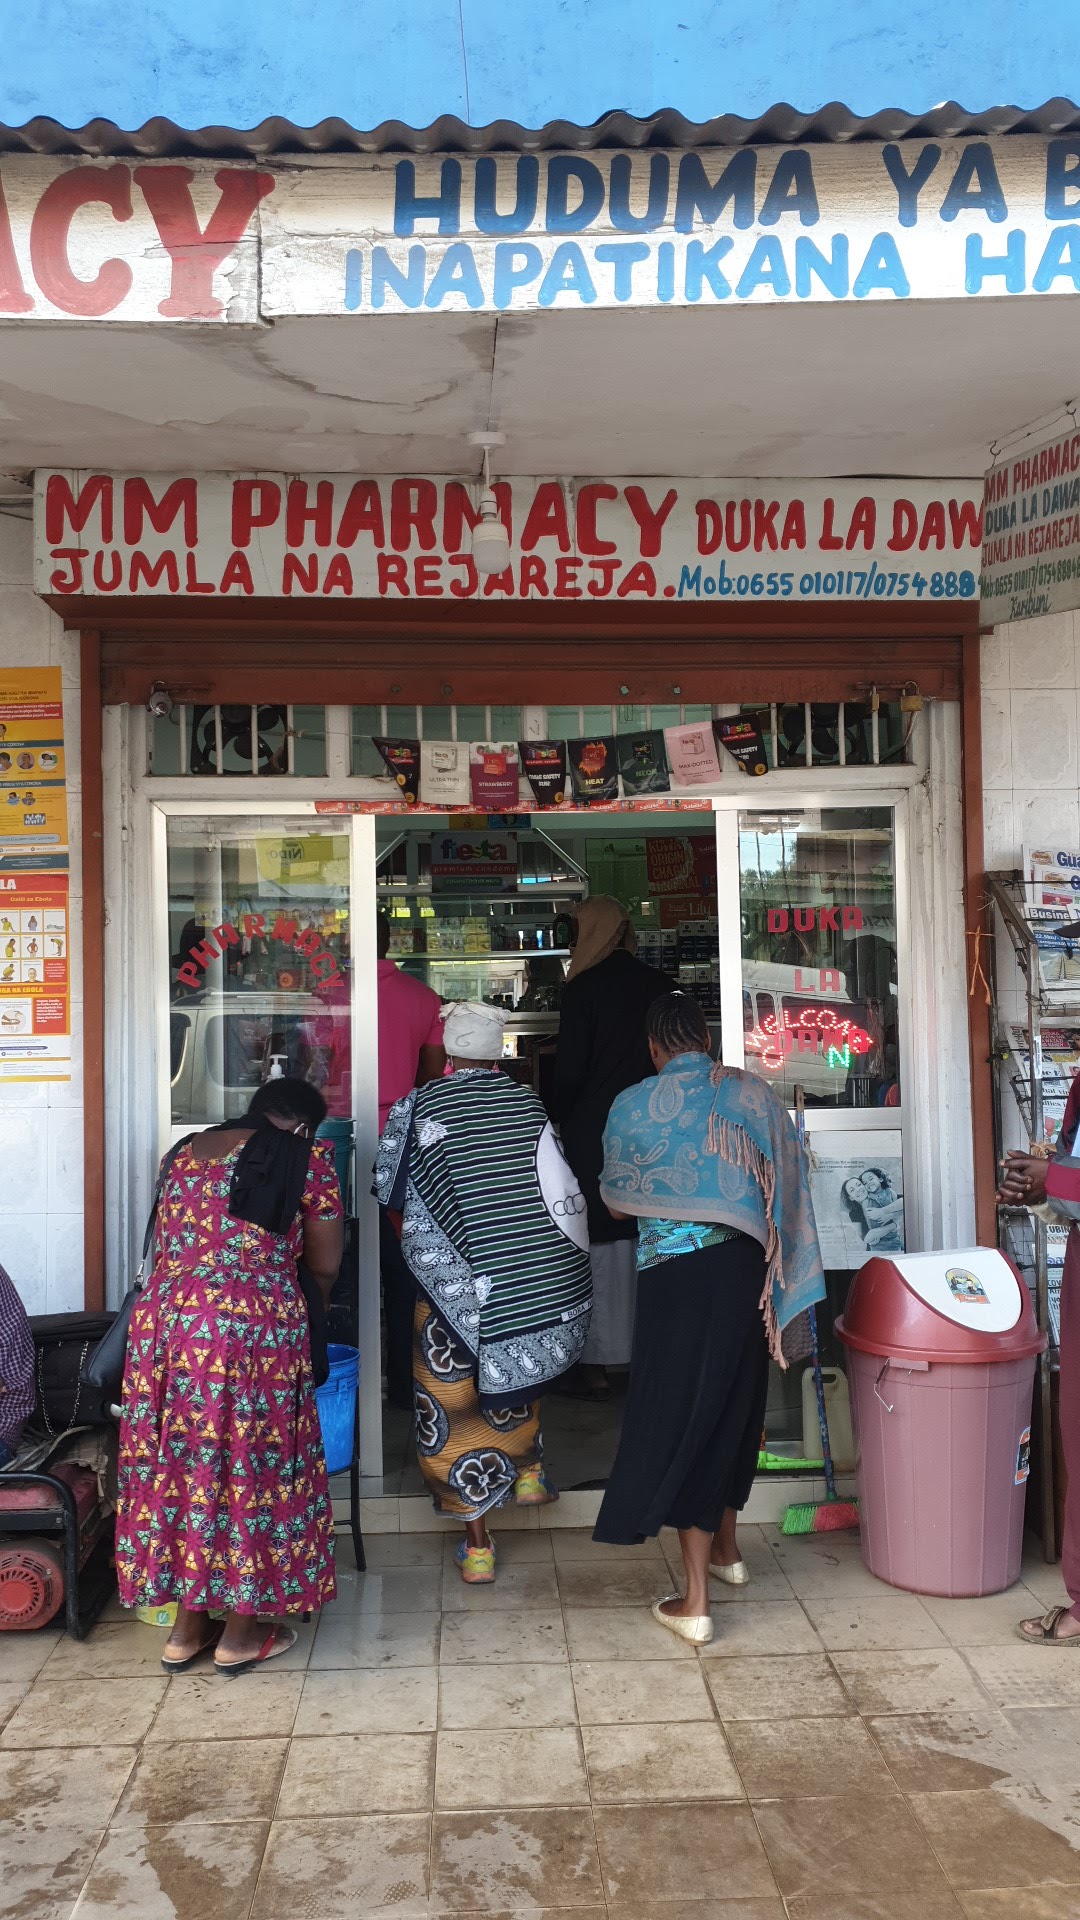 MM Pharmacy